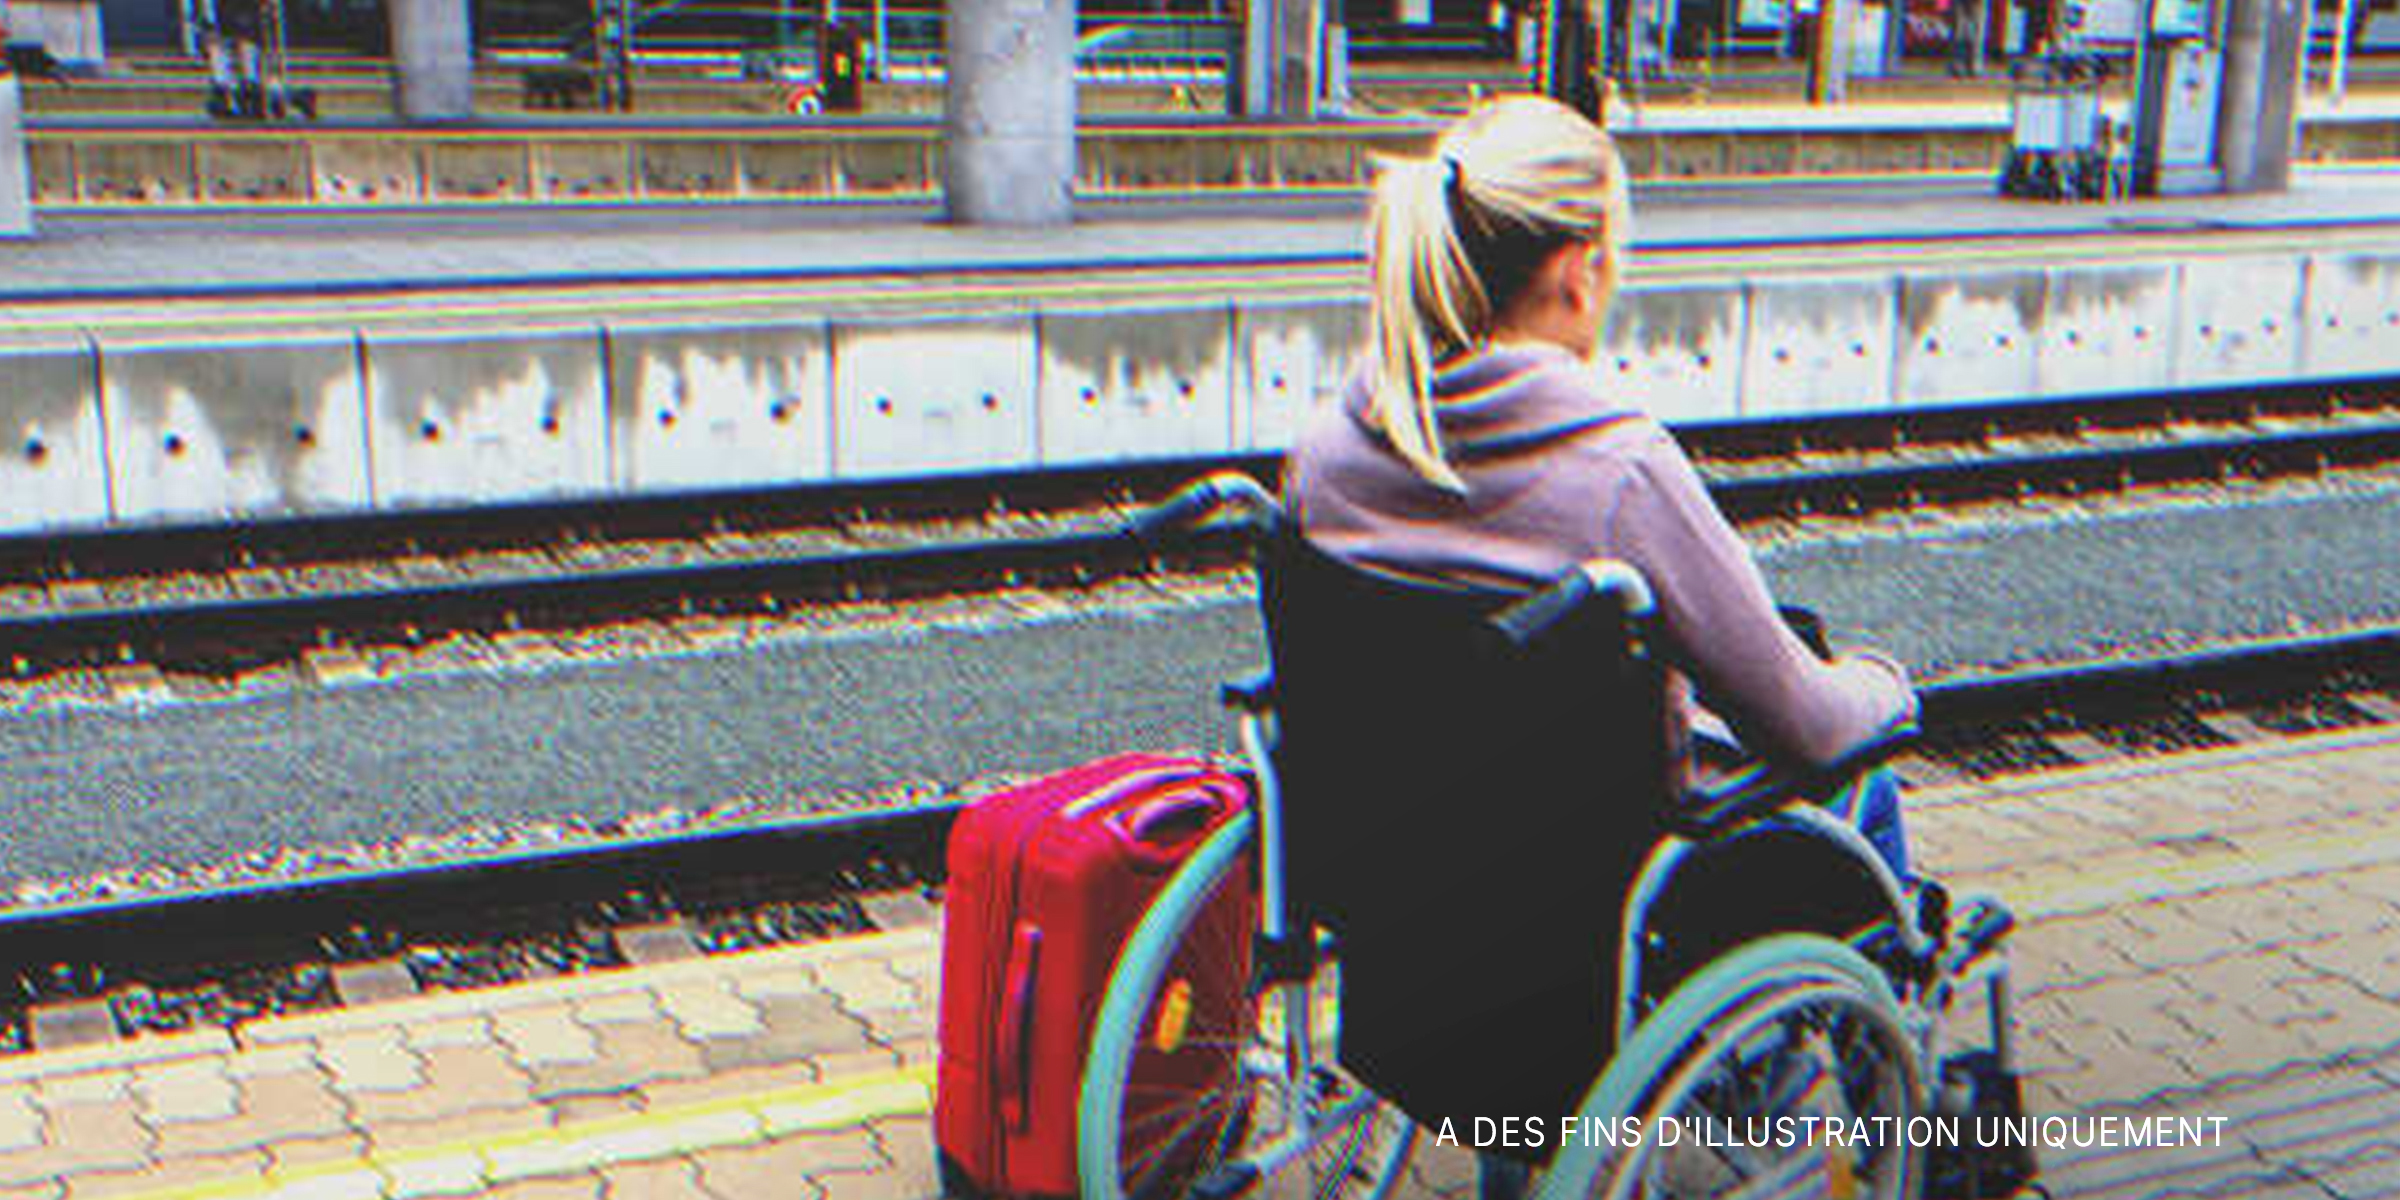 Femme en fauteuil roulant dans une gare. | Source : Shutterstock